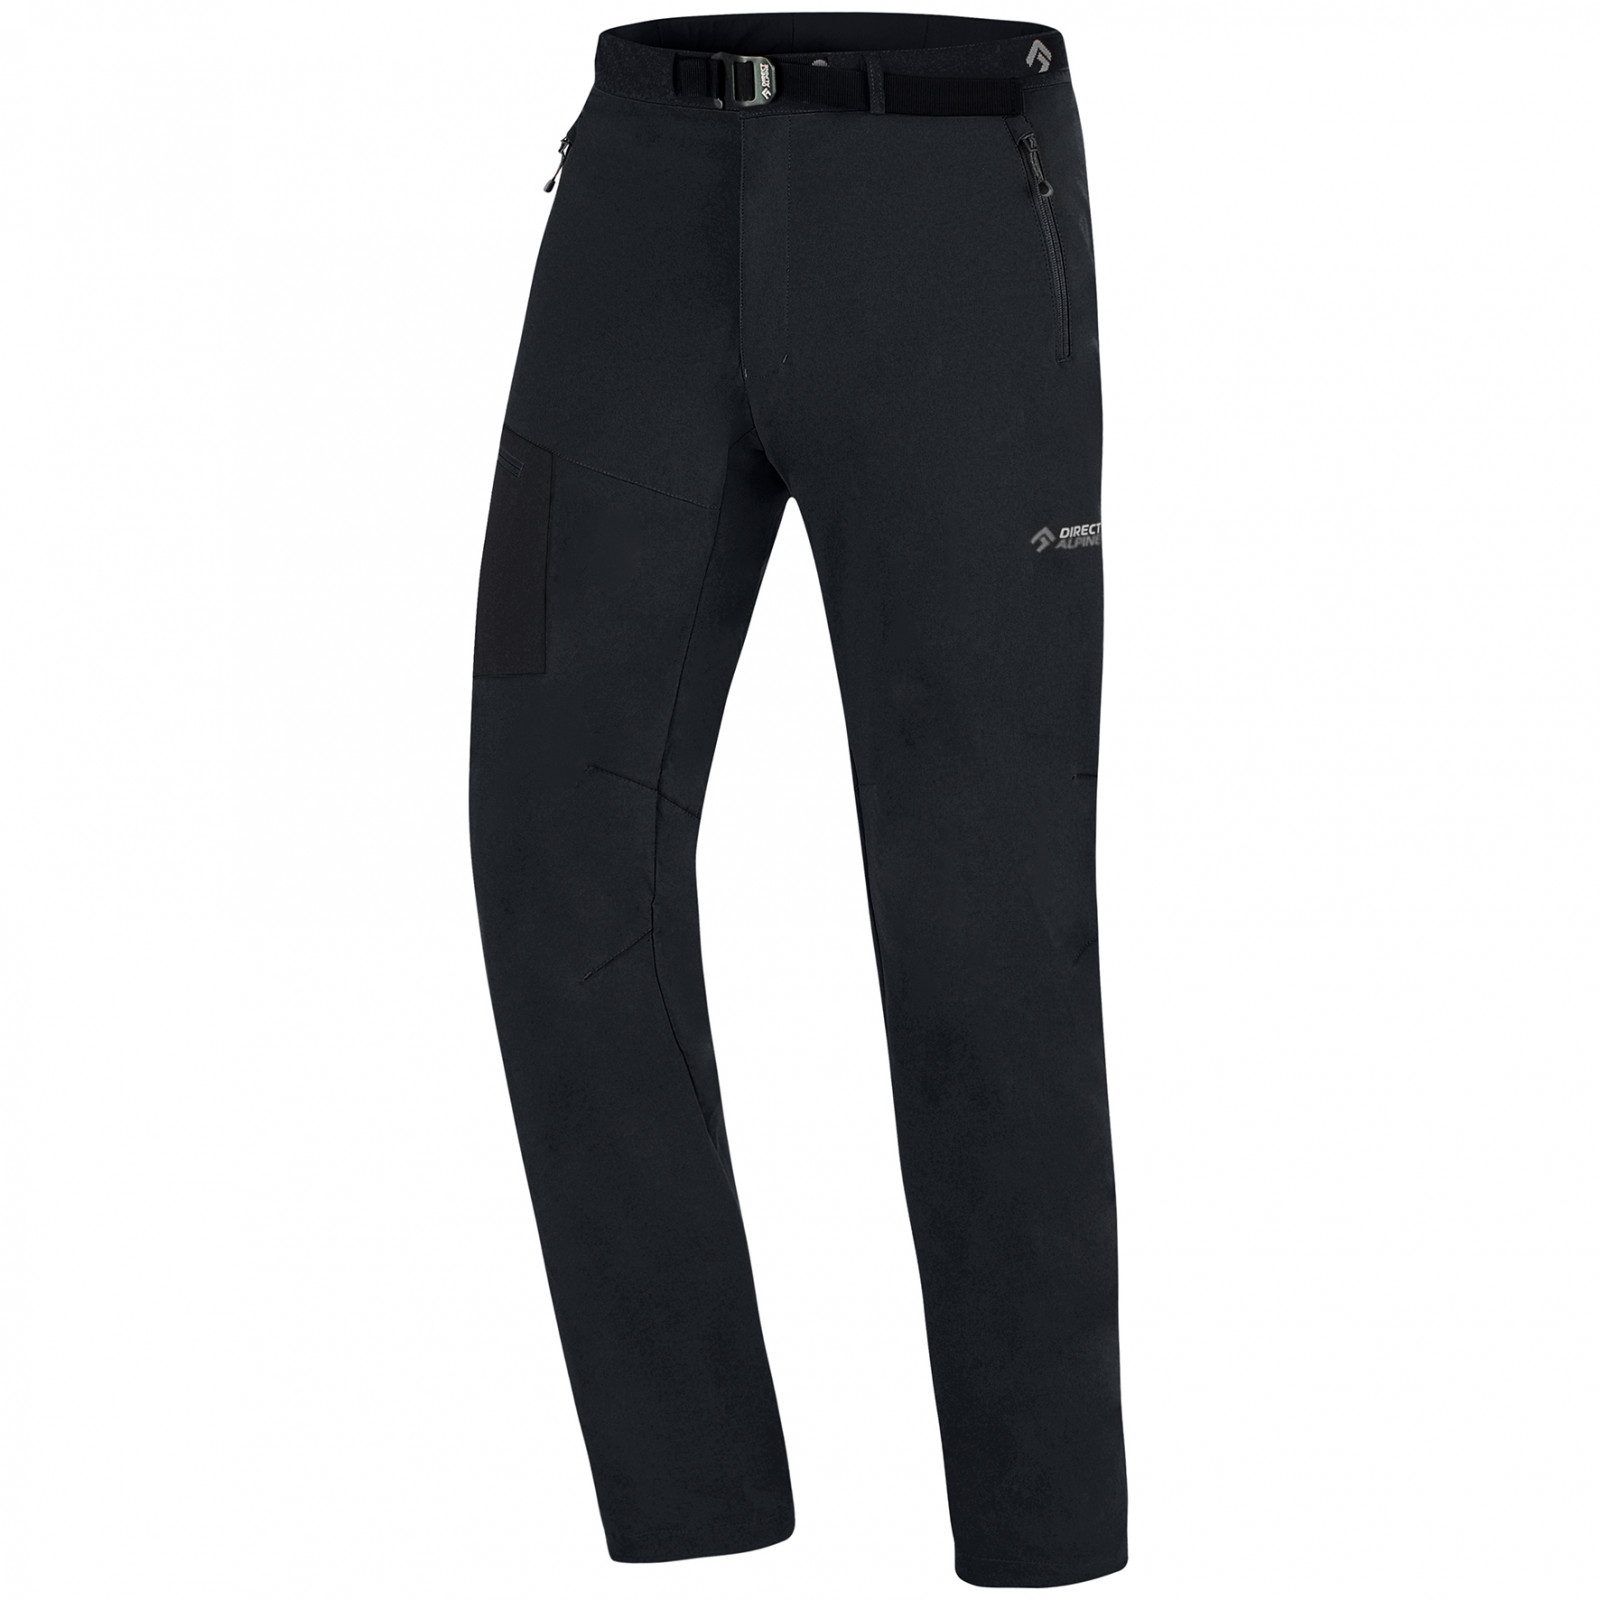 Pánské kalhoty Direct Alpine Cruise Velikost: M / Délka kalhot: regular / Barva: černá